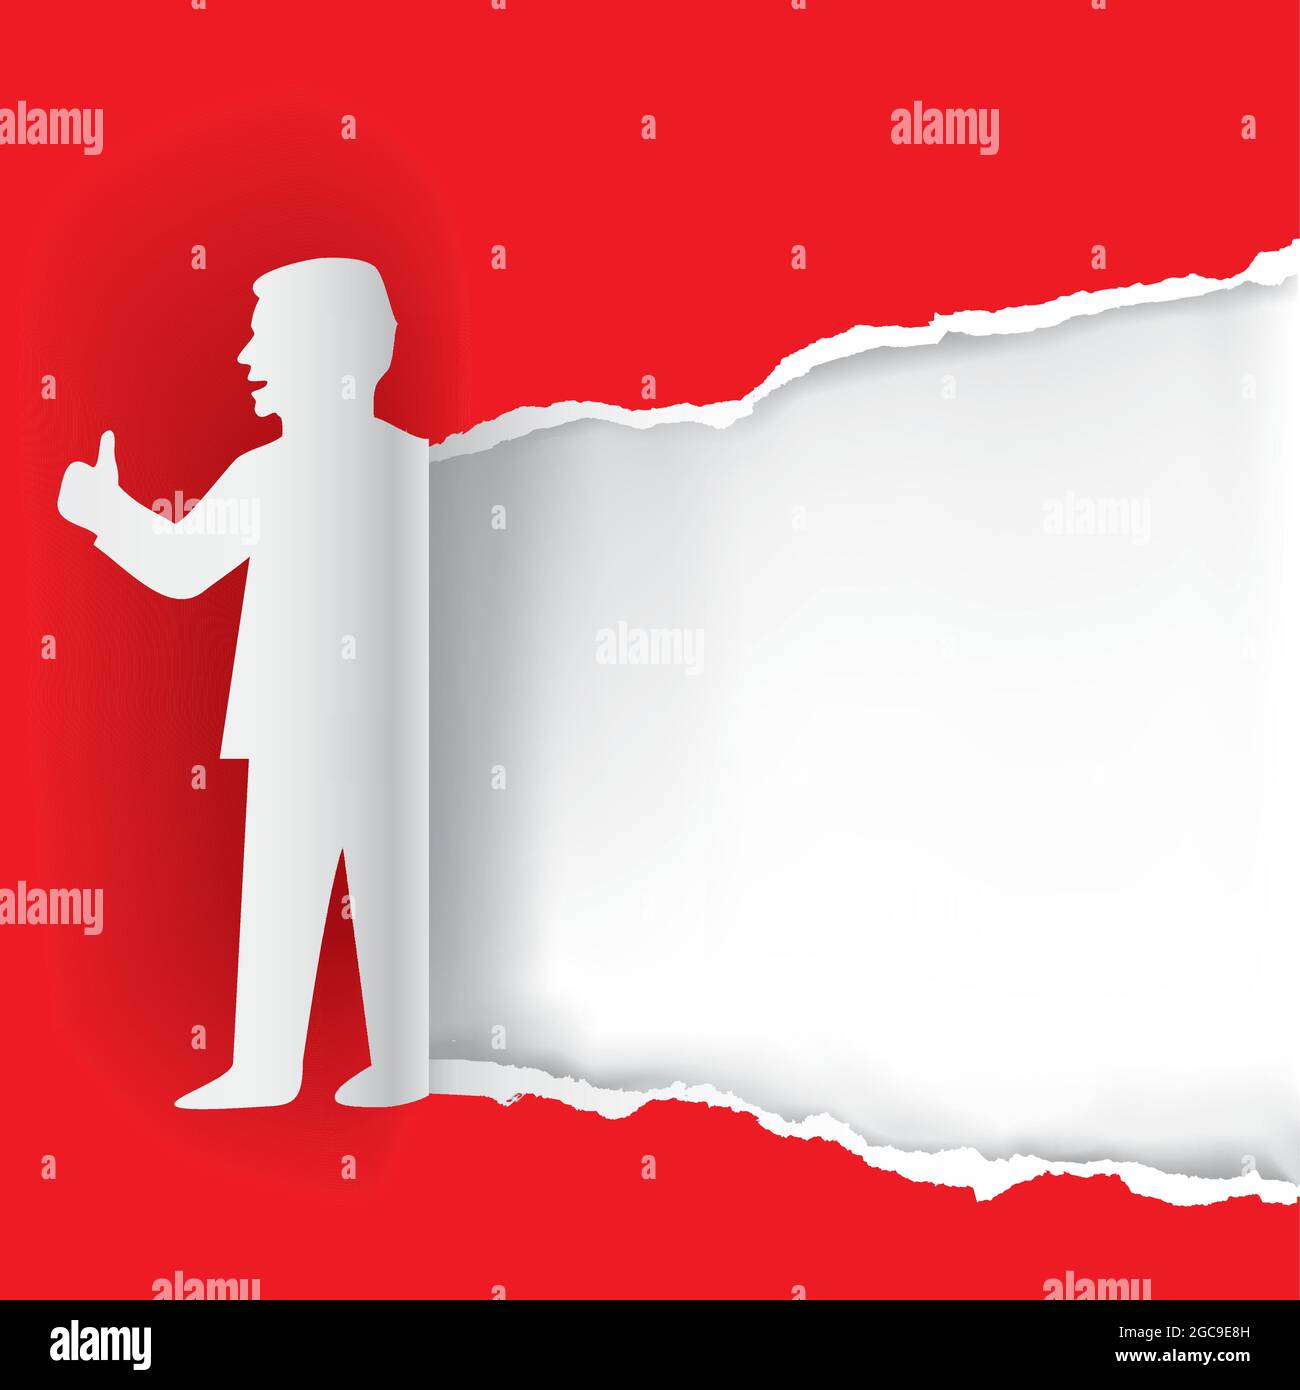 Homme avec le pouce vers le haut, modèle de bannière. Arrière-plan en papier déchiré rouge avec silhouette stylisée d'homme en papier. Vecteur disponible. Illustration de Vecteur